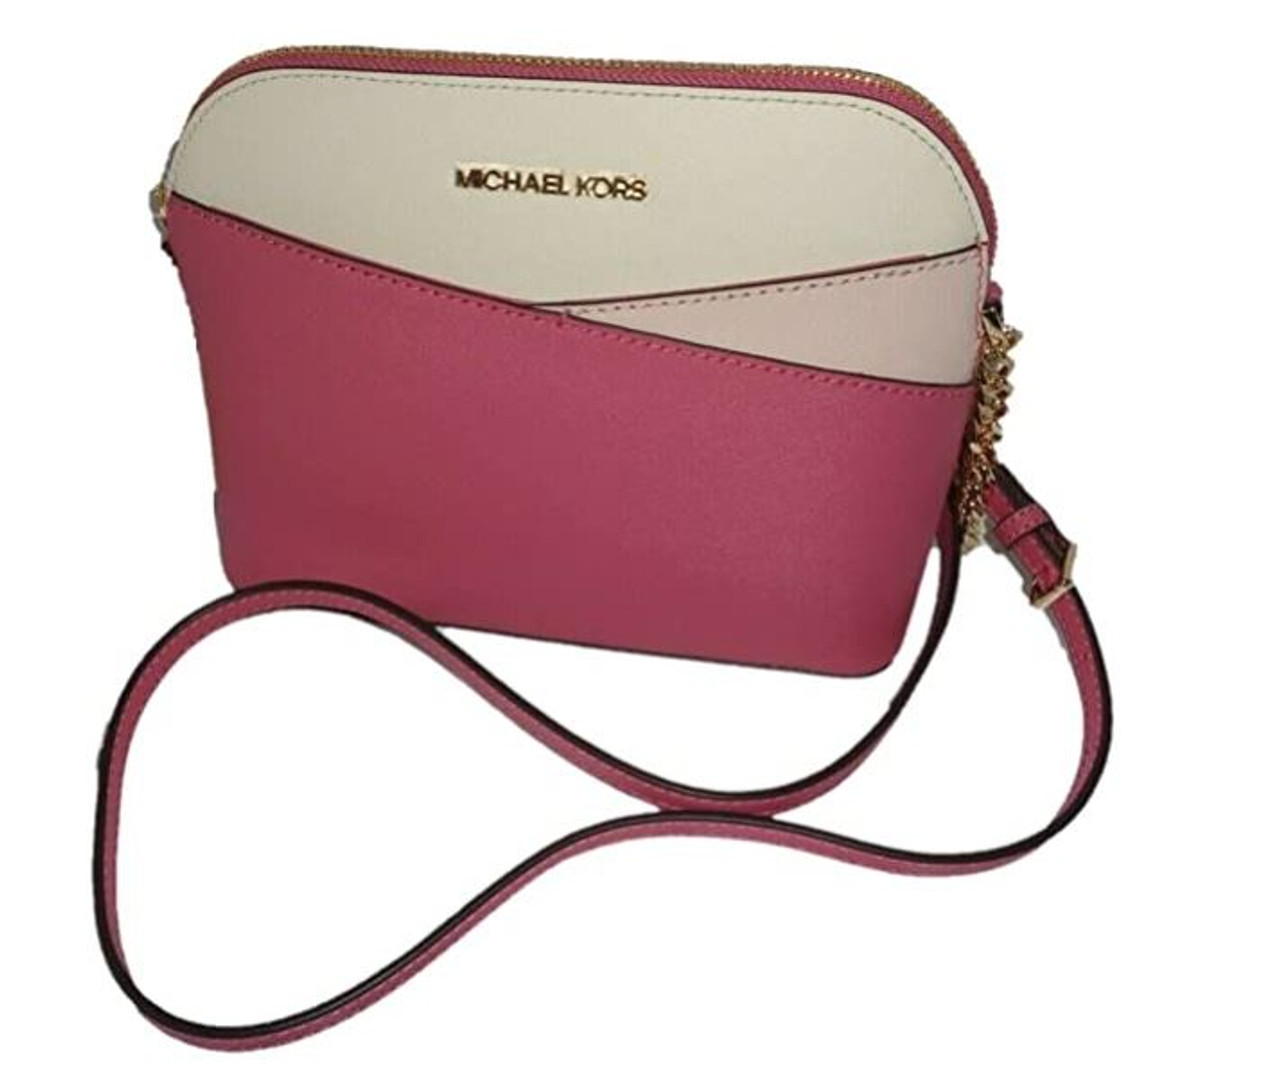 Michael Kors Women's Rose Medium Crossbody Bag